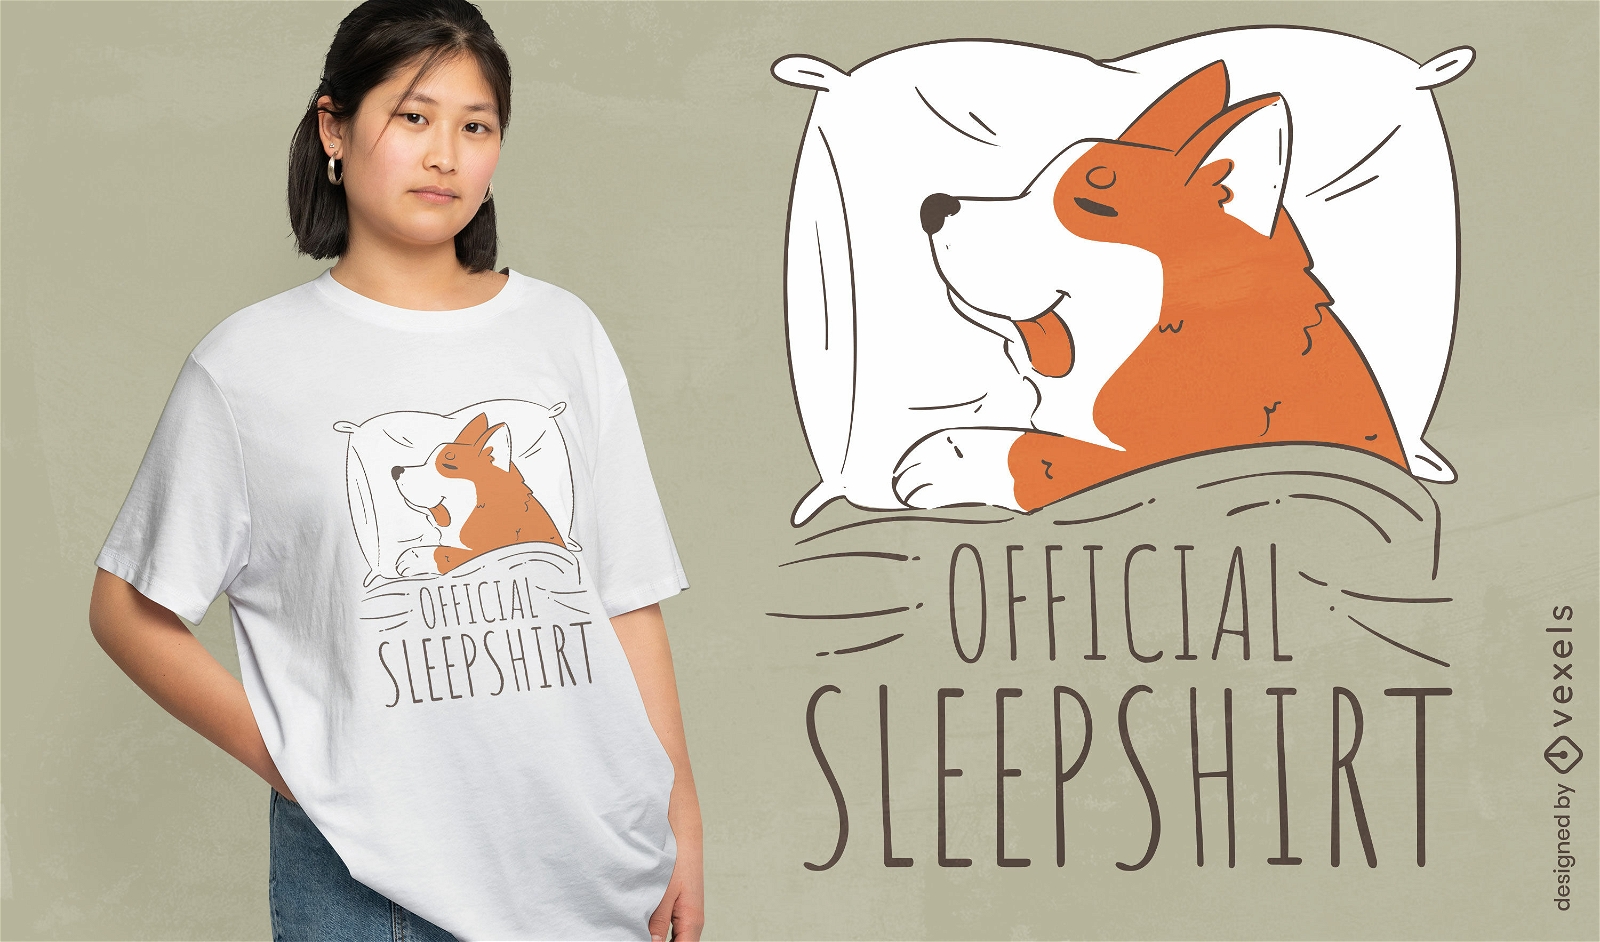 Dog sleepshirt t-shirt design